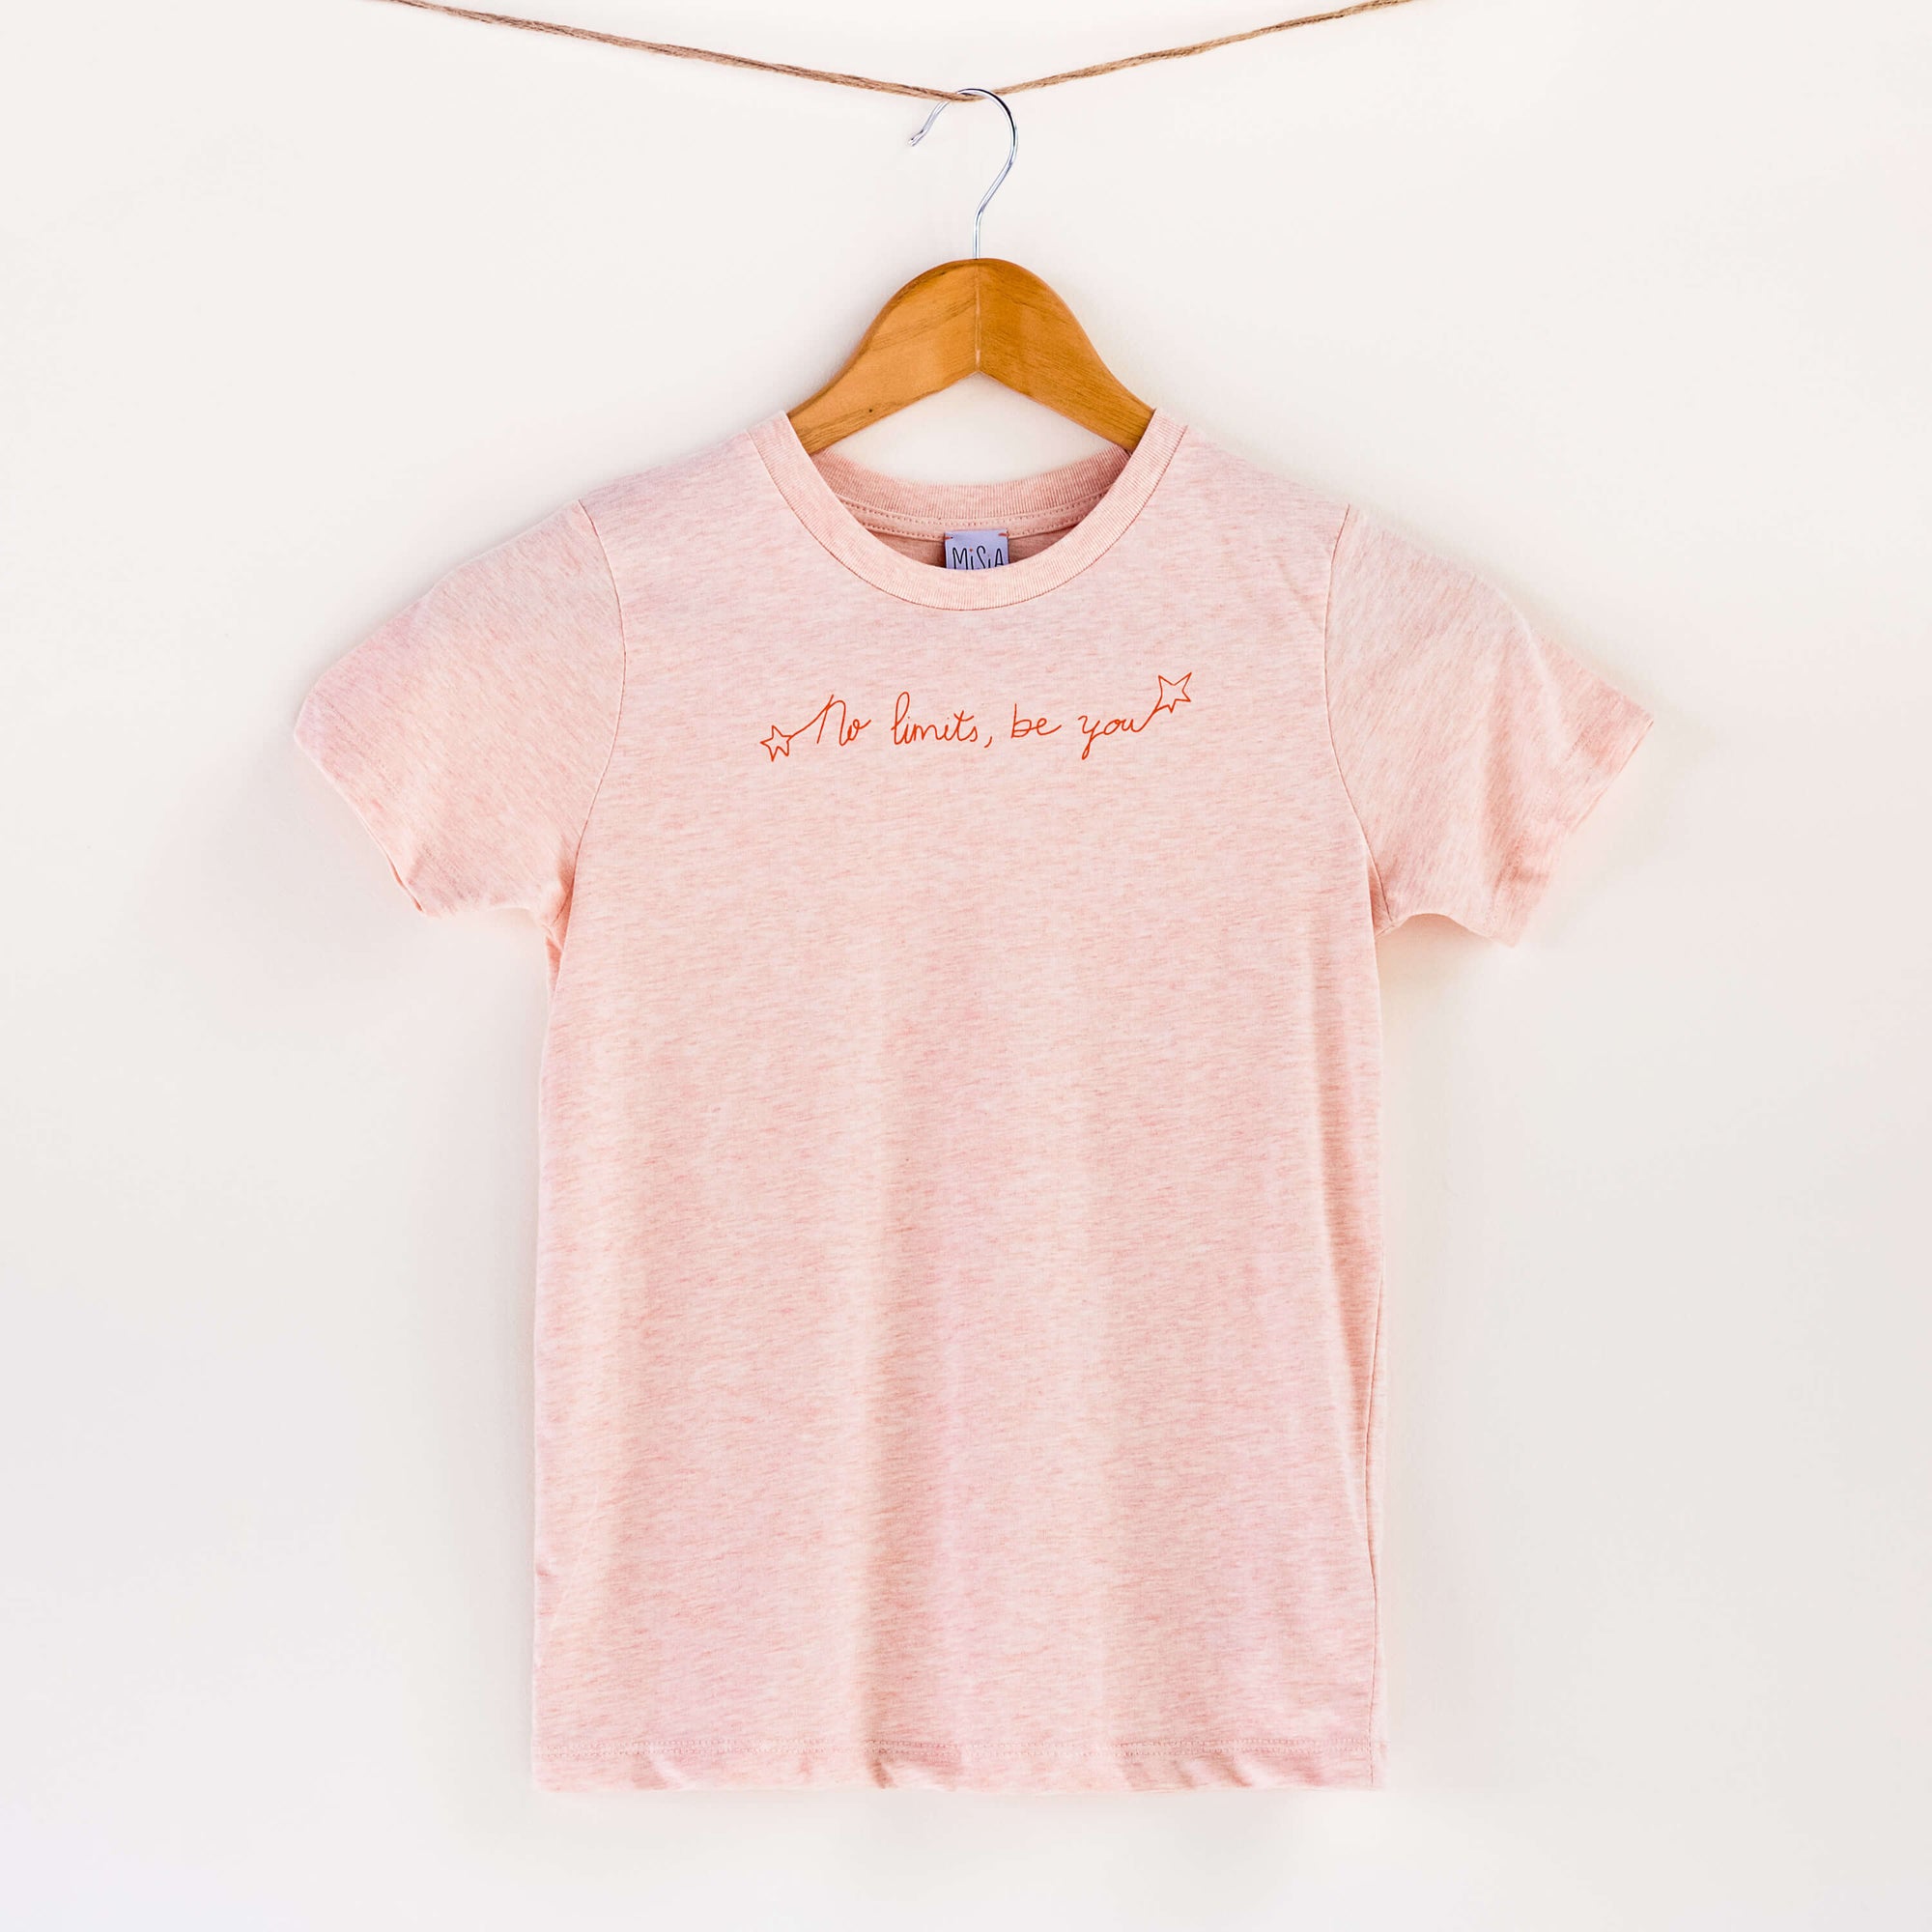 Camiseta blanca de algodón orgánico para niños, estampado a mano con tintas ecológicas. Texto estampado en color naranja. Modelo unisex.